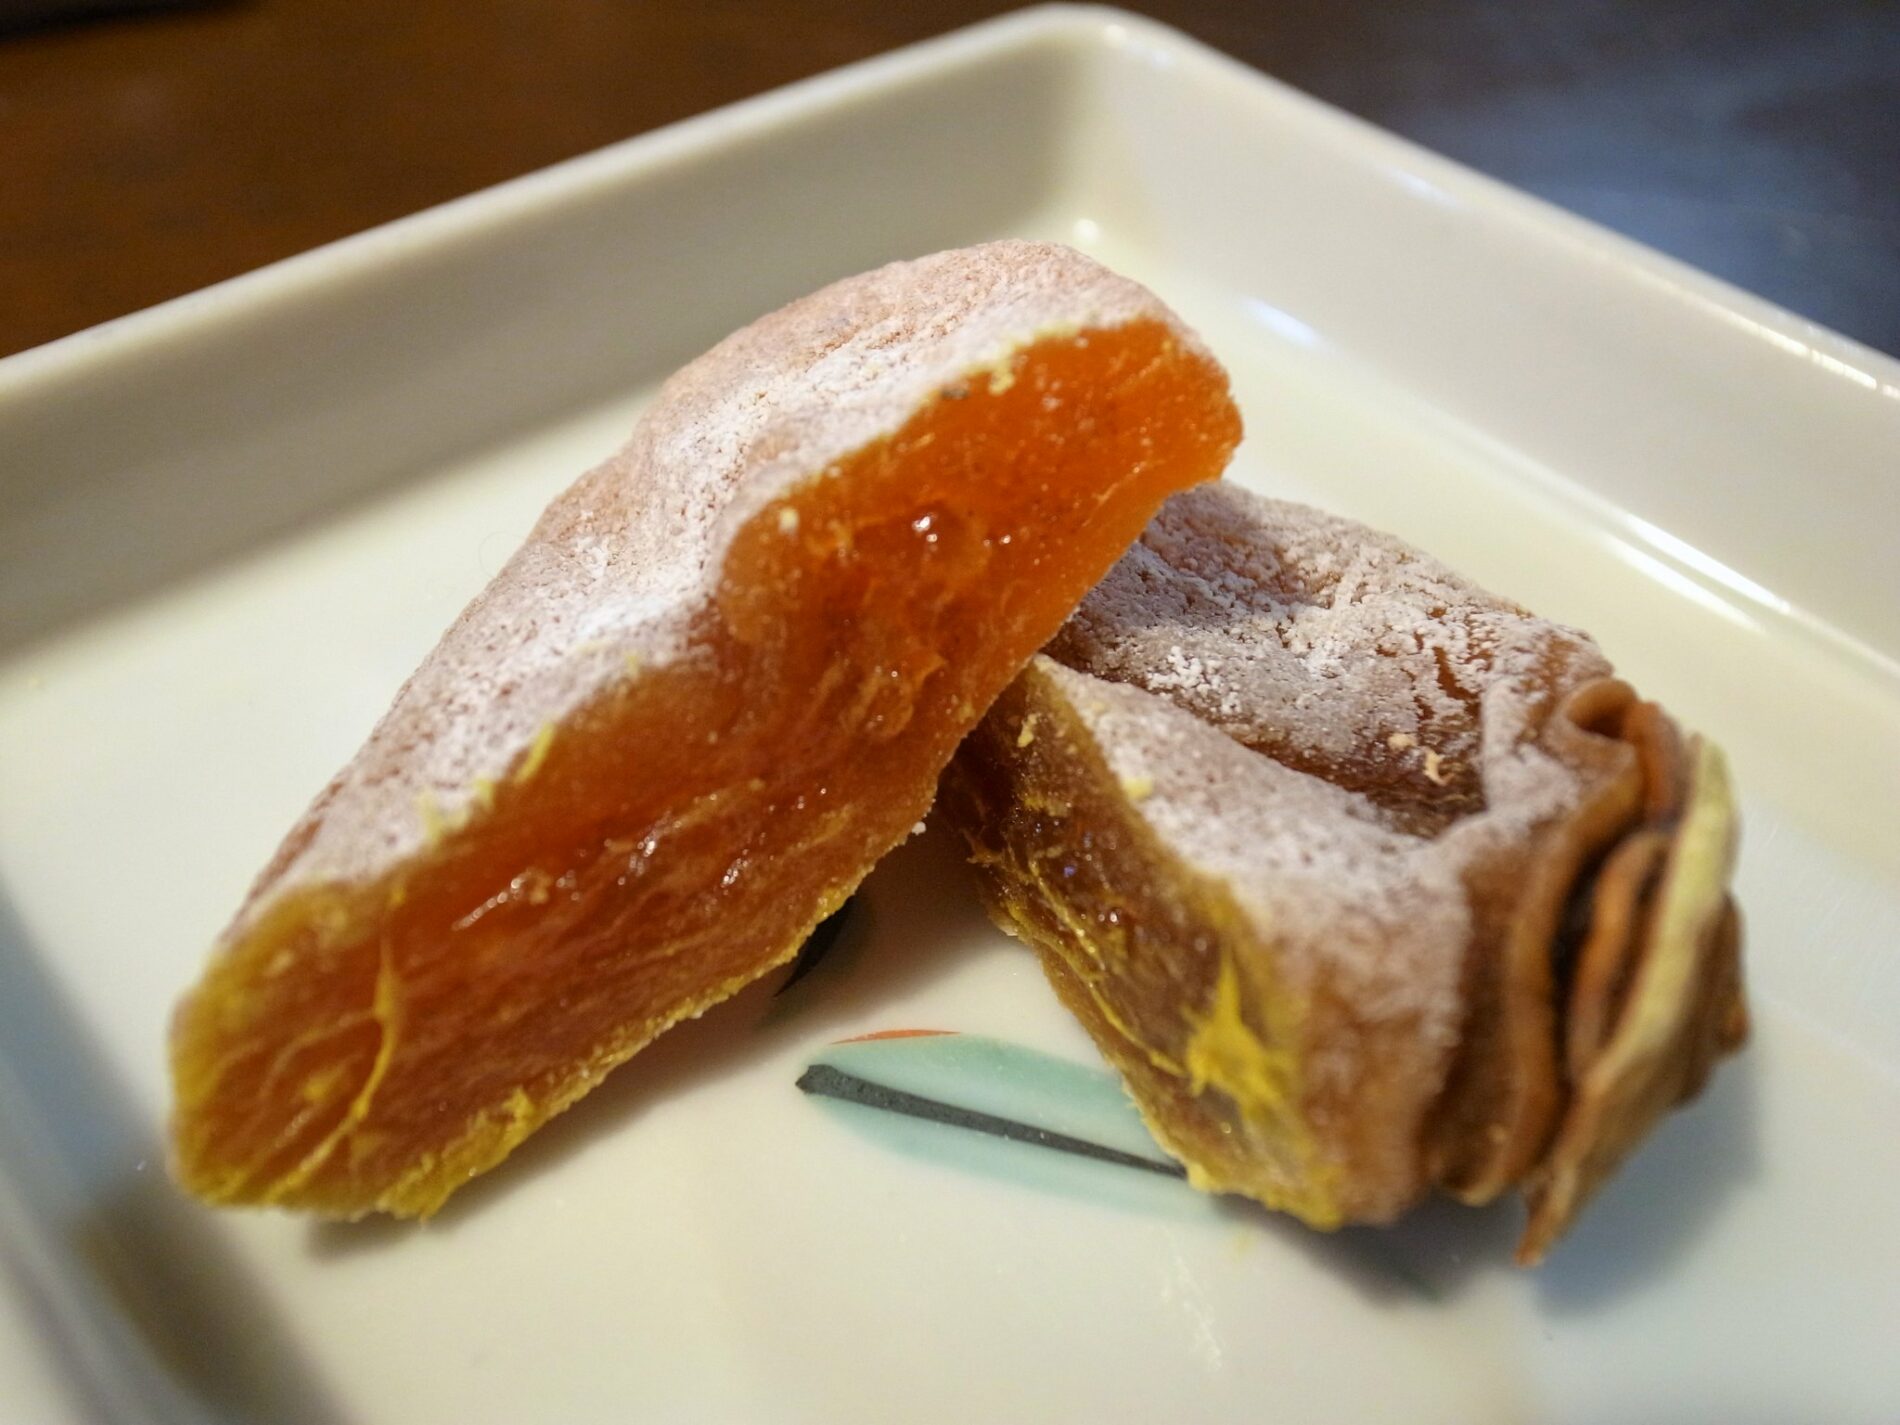 Getrocknete Persimmon sind in Japan eine Delikatesse. Der Herstellungsprozess ist sehr aufwendig. (Foto: Kazuhiko Kato, flickr https://flic.kr/p/dHLevA CC BY 2.0)